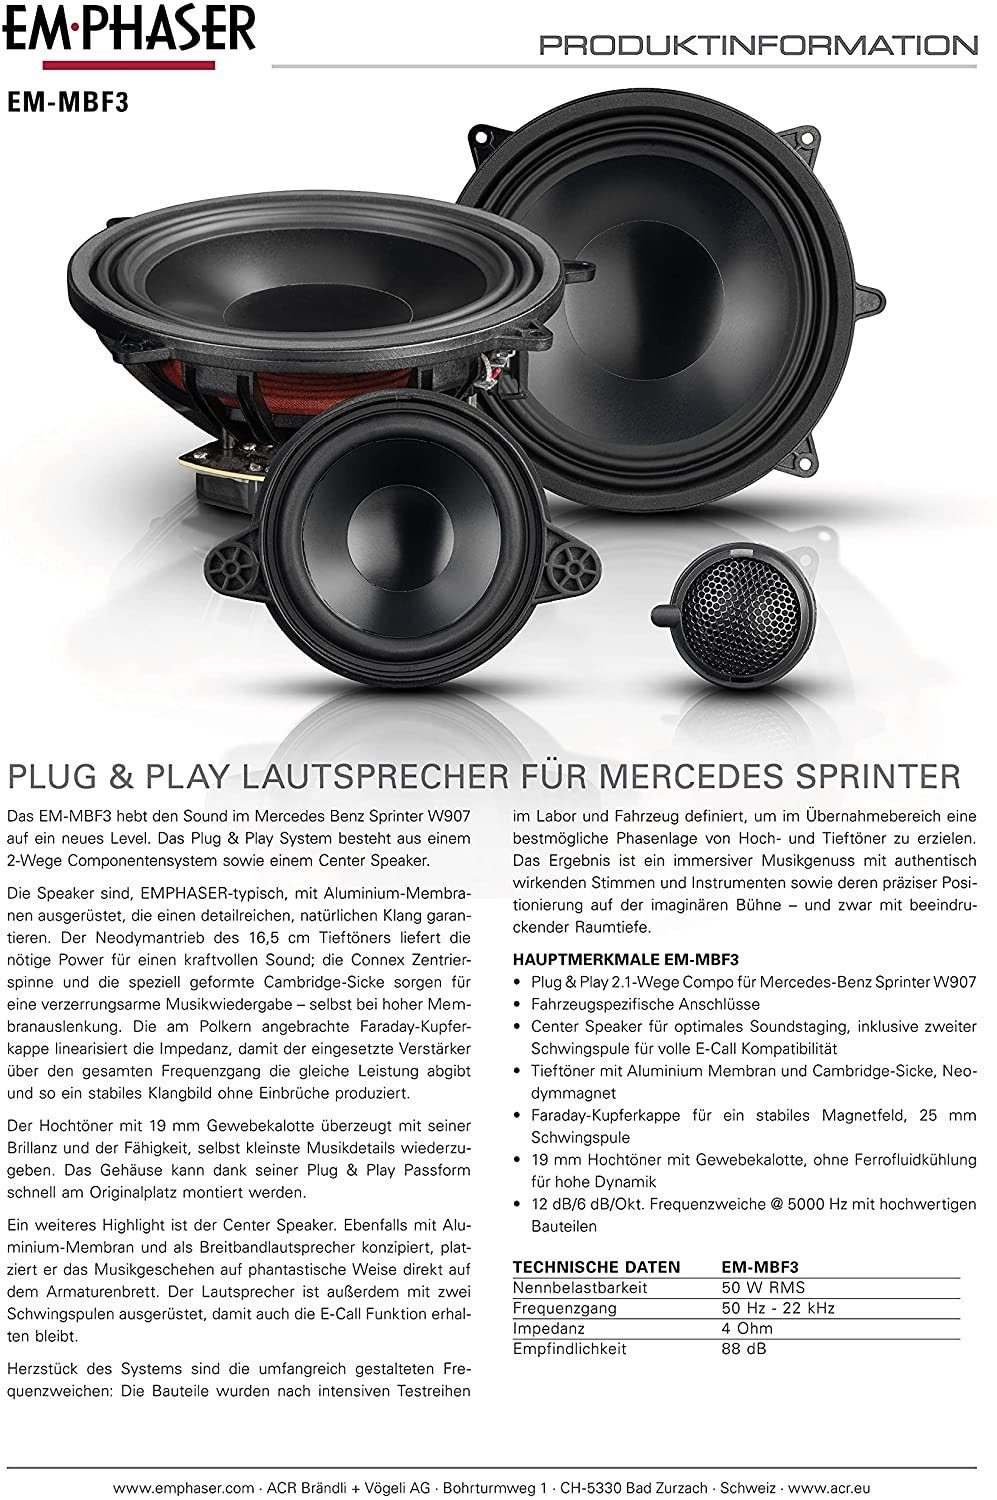 Auto-Lautsprecher Mercedes MBF3 für EmPhaser Sprinter 2.1 Emphaser Lautsprecher